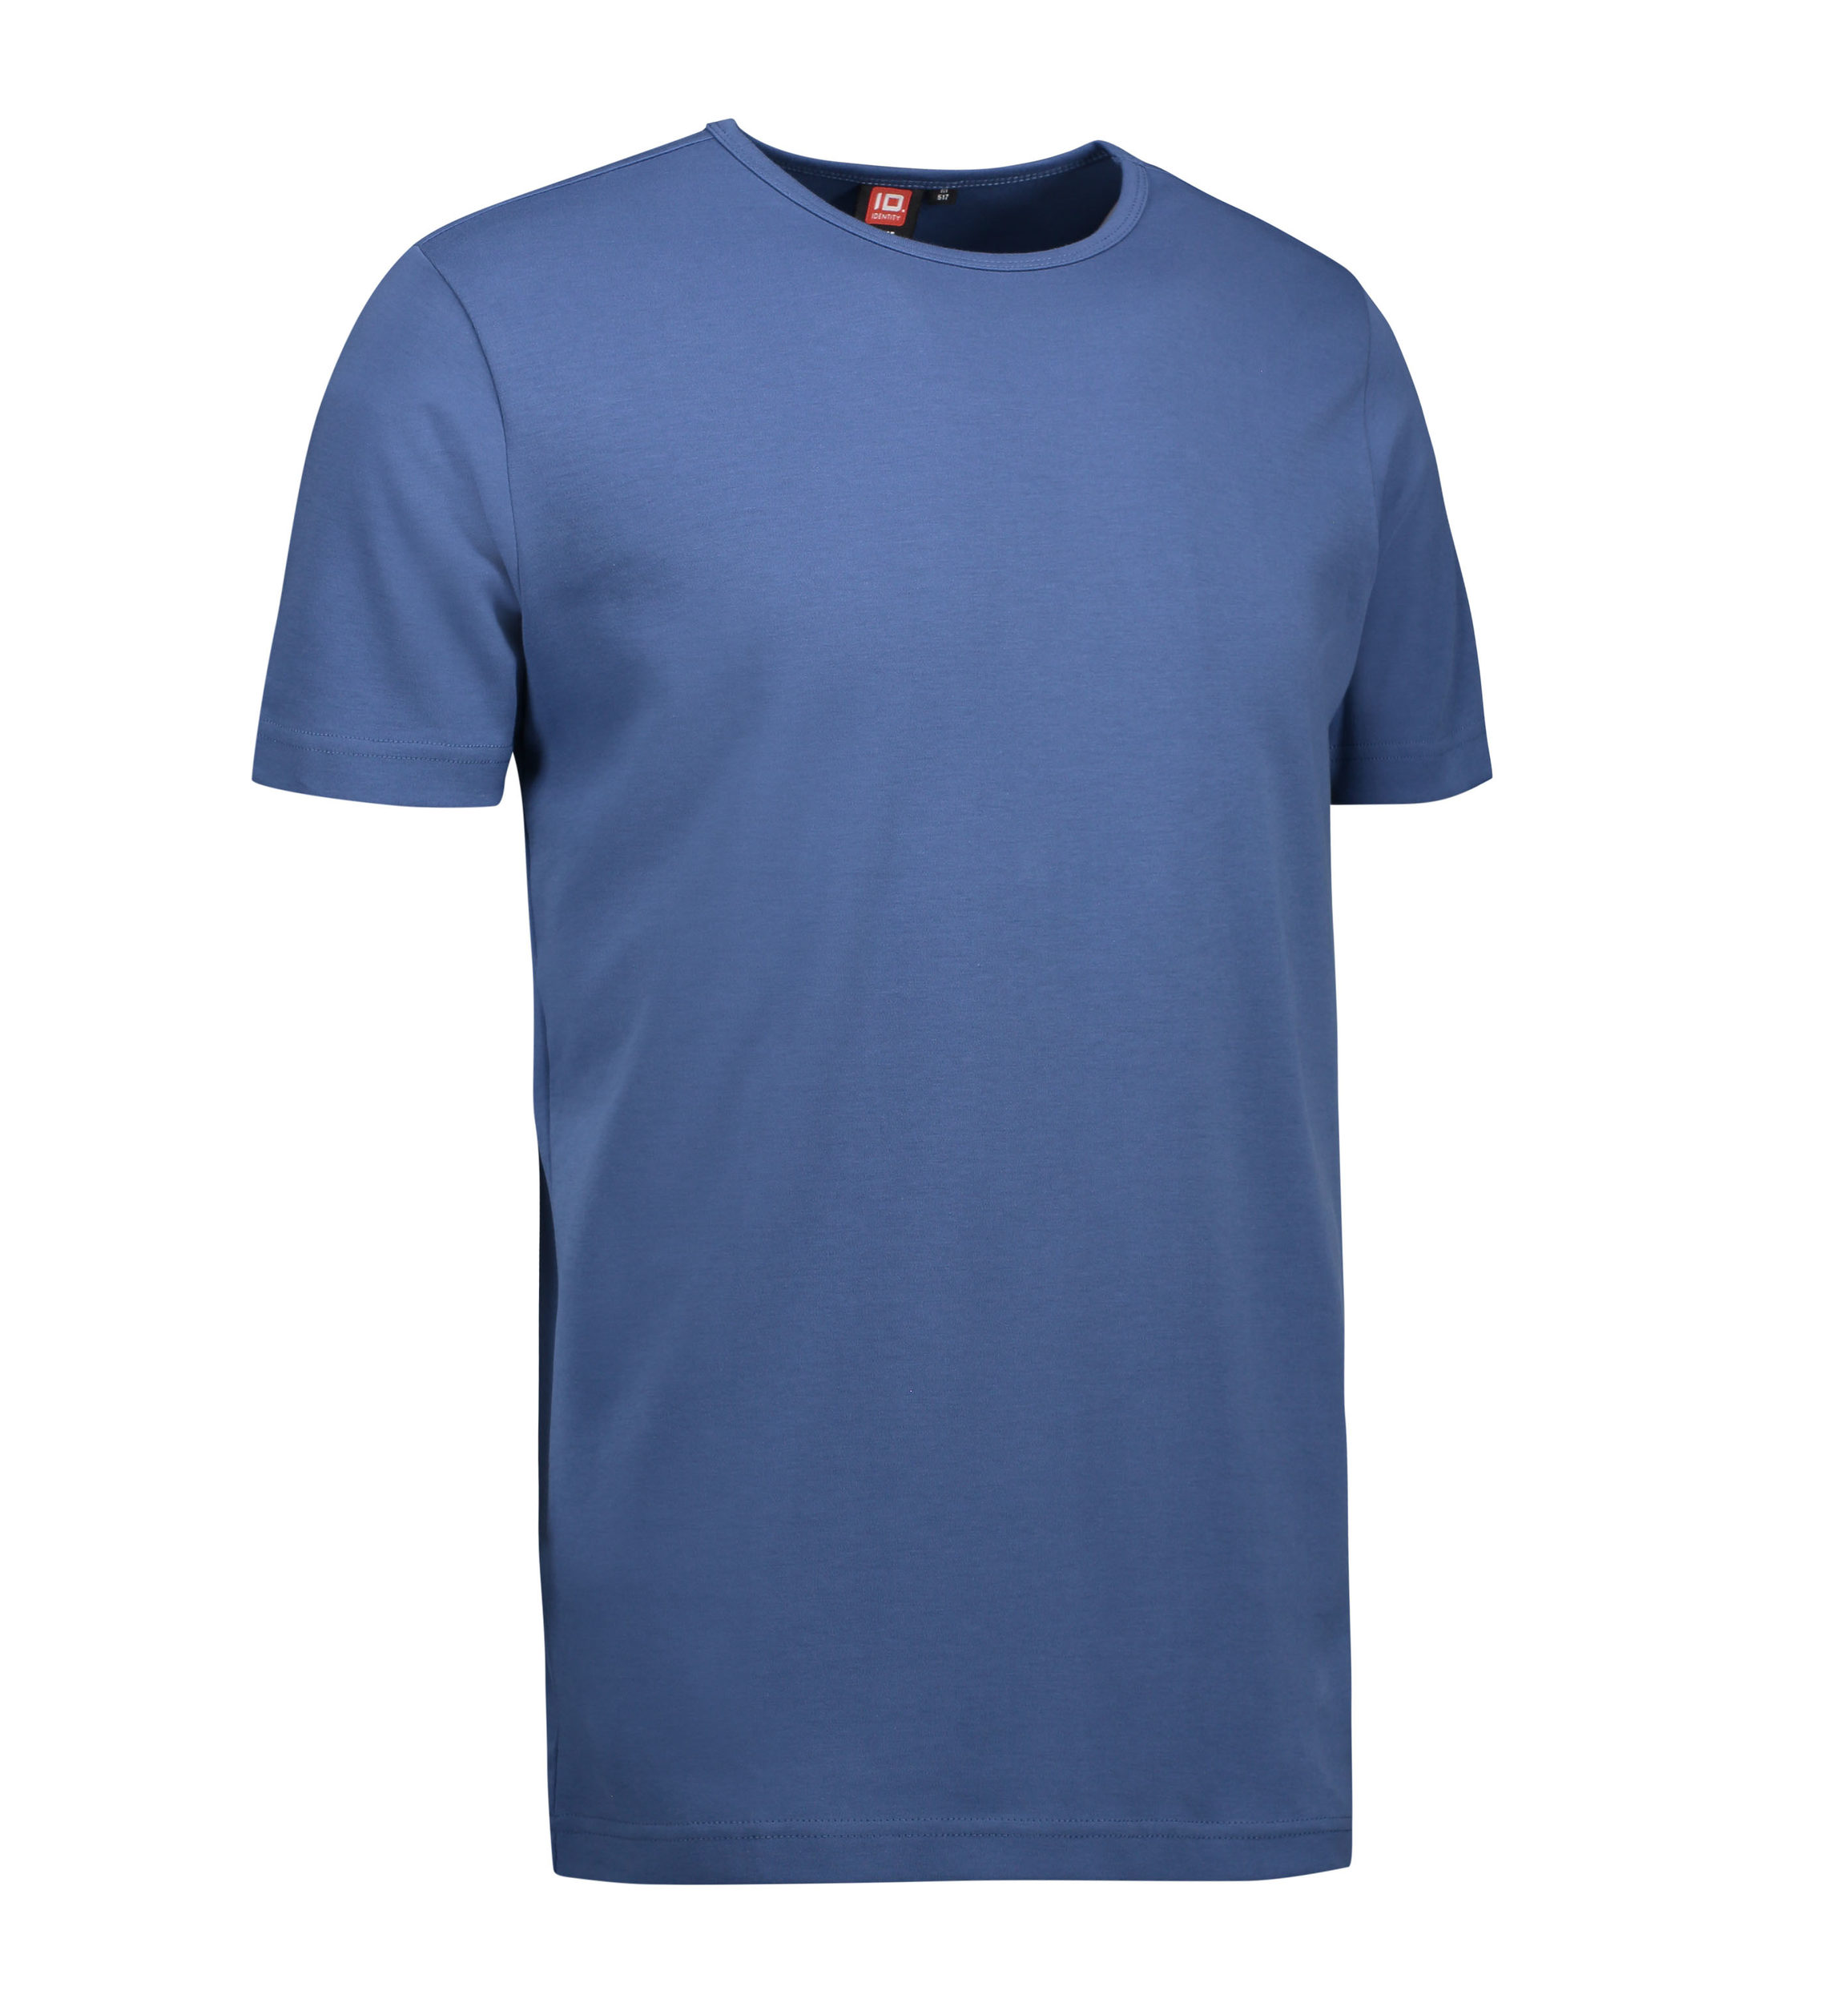 Billede af Indigo farvet t-shirt med rund hals til mænd - S hos Sygeplejebutikken.dk